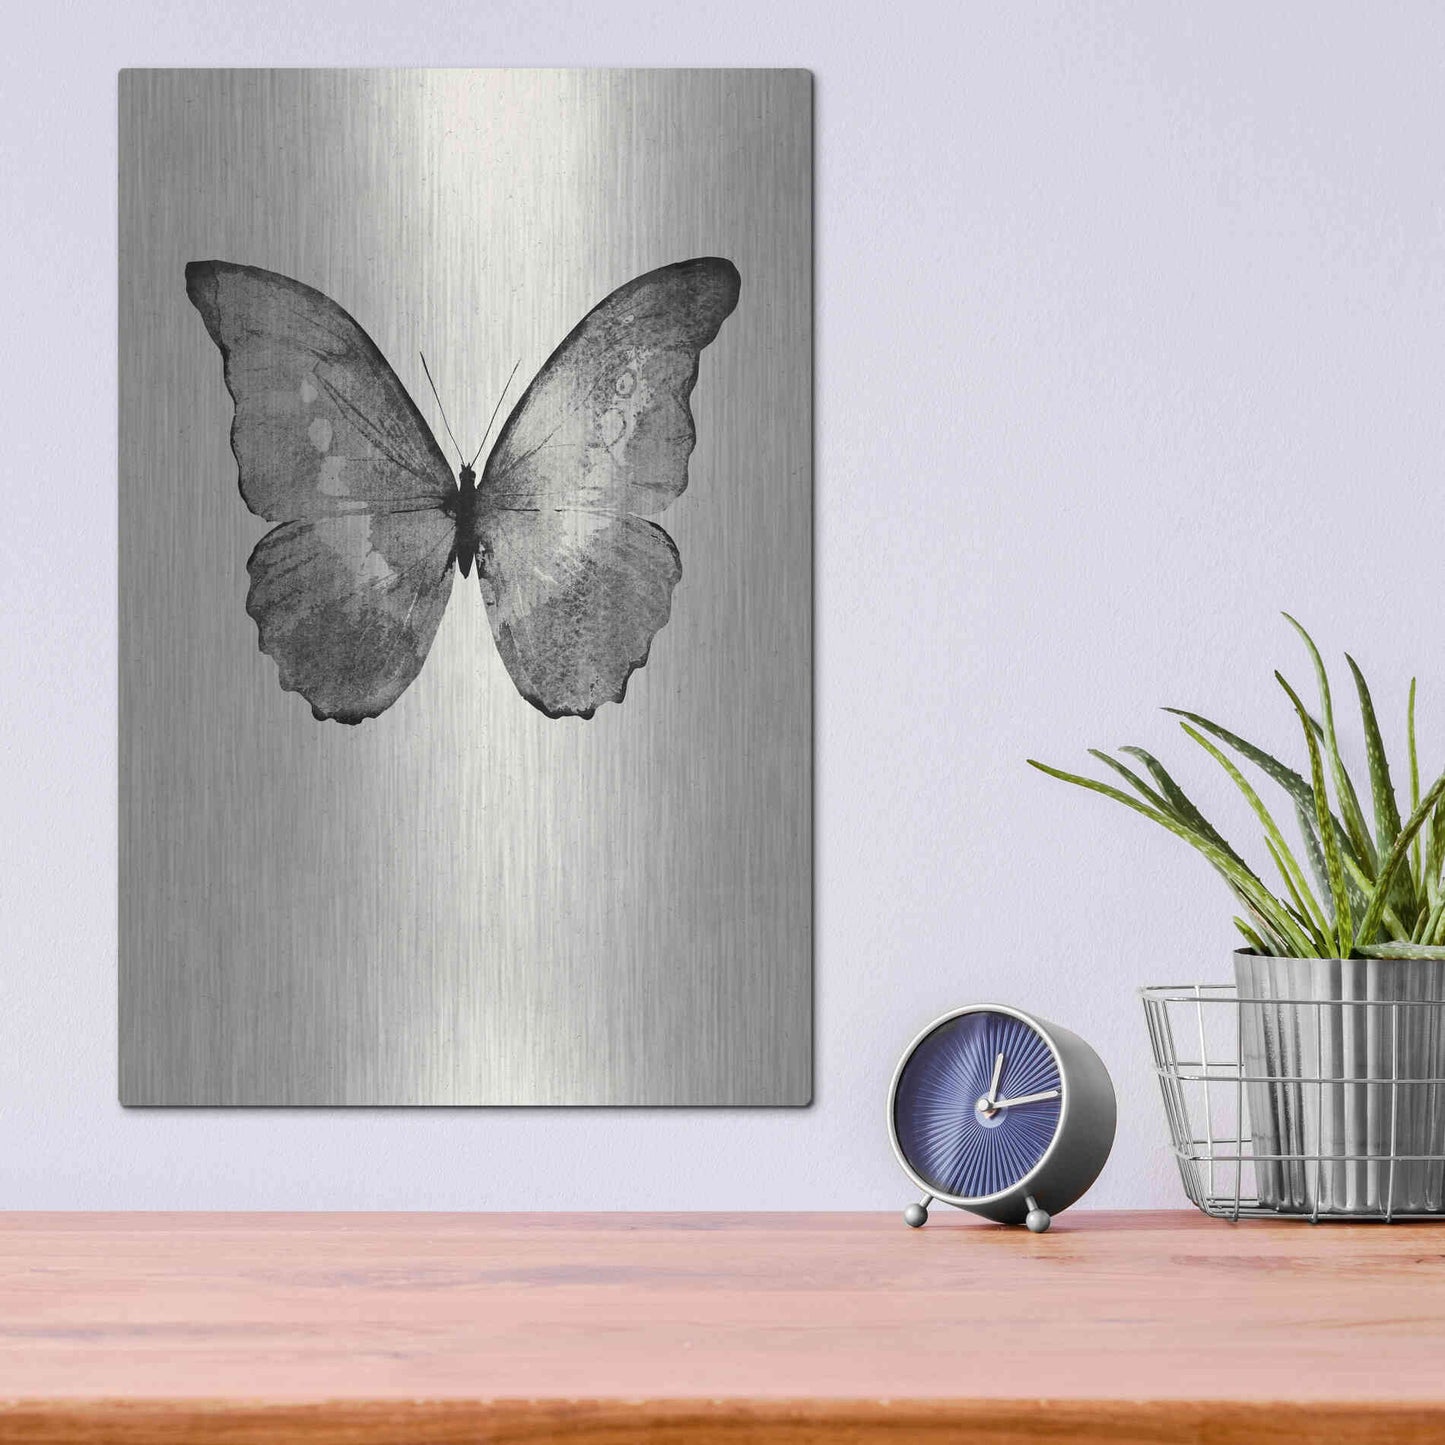 Luxe Metal Art 'Black Butterfly on Tan' by Design Fabrikken, Metal Wall Art,12x16